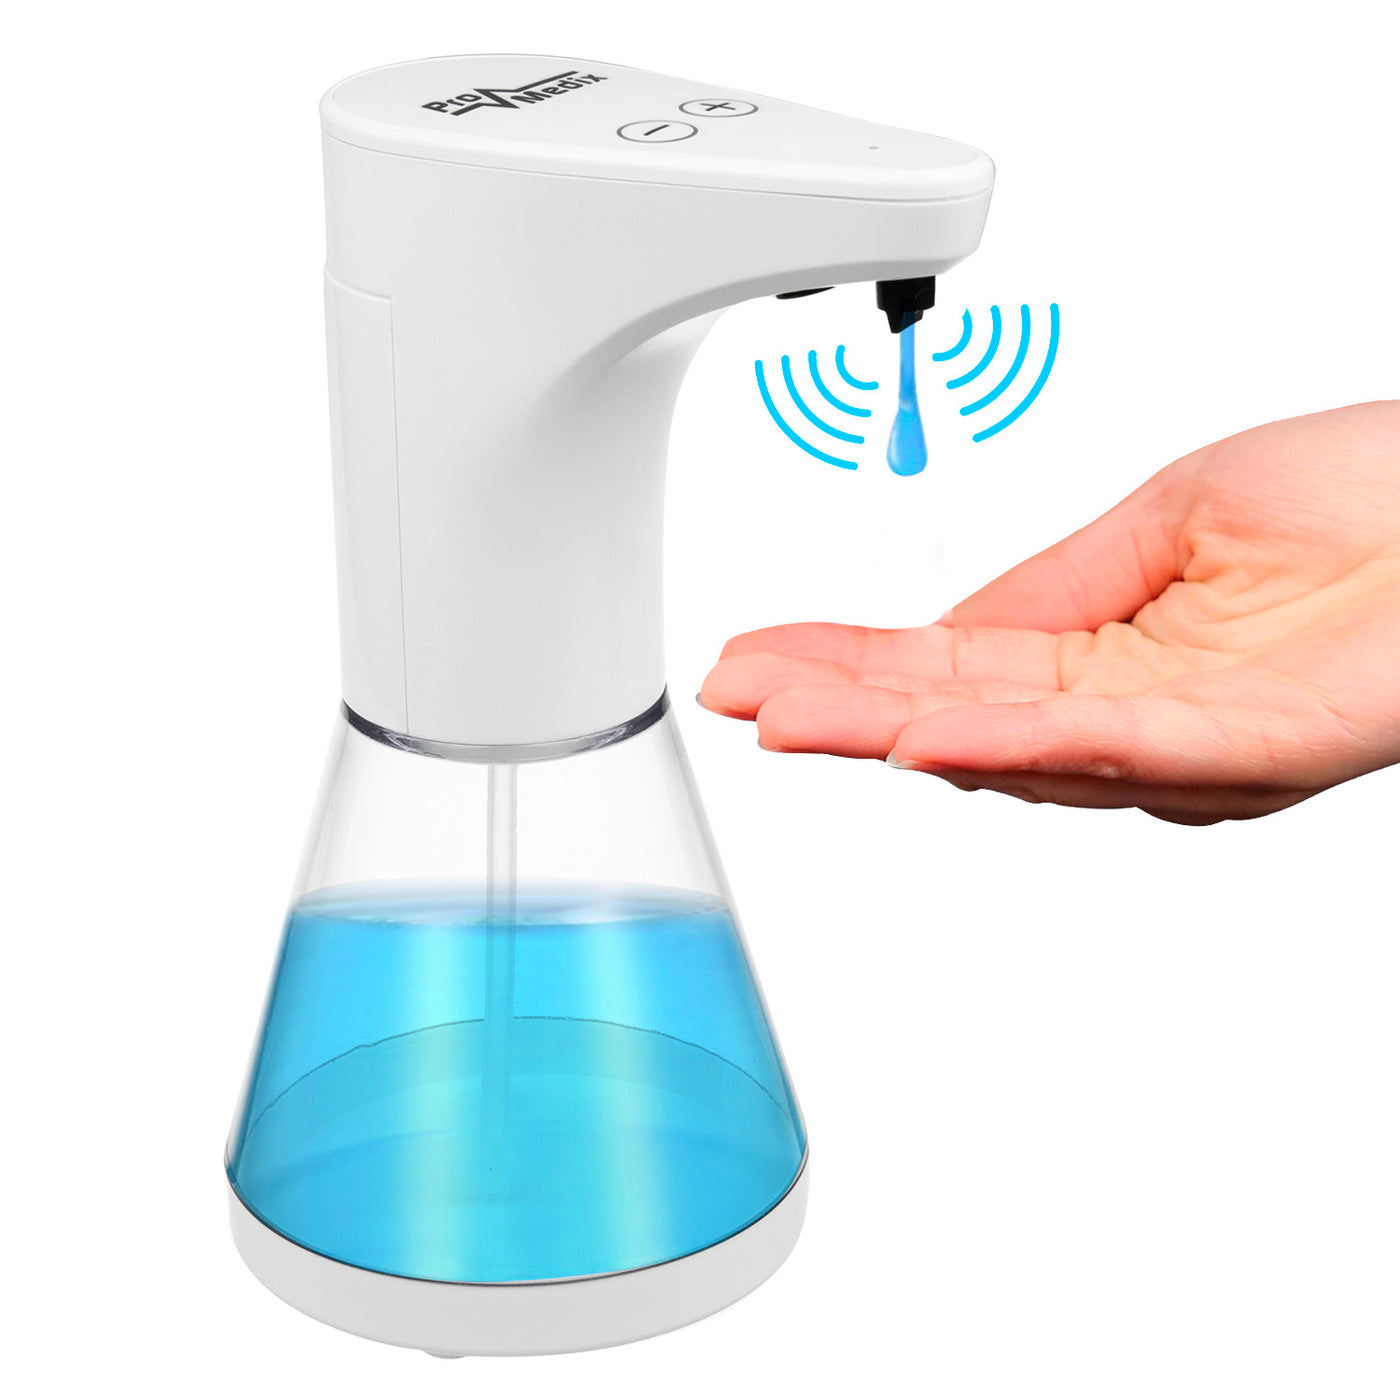 Automatyczny dozownik pojemnik dyspenser do płynnych mydeł, płynów dezynfekujących oraz żeli Promedix PR-530 480ml na 4 baterie AA